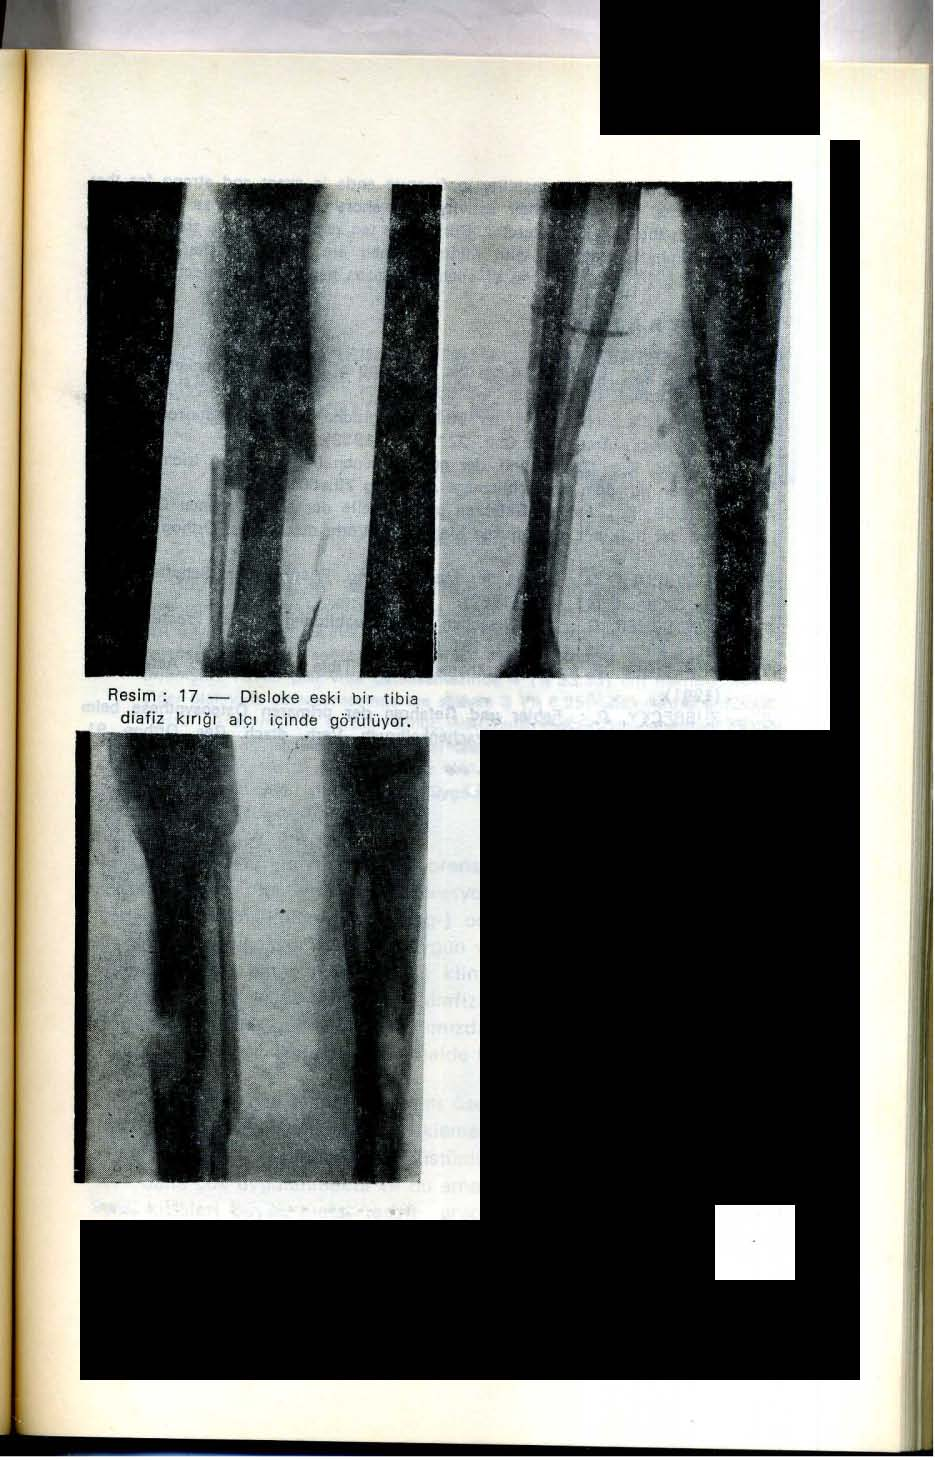 Resim: 18 - Resim 17 deki kırığın çivi ile tedavisinden sonra enfeksiyon meydana çıkmıştır.